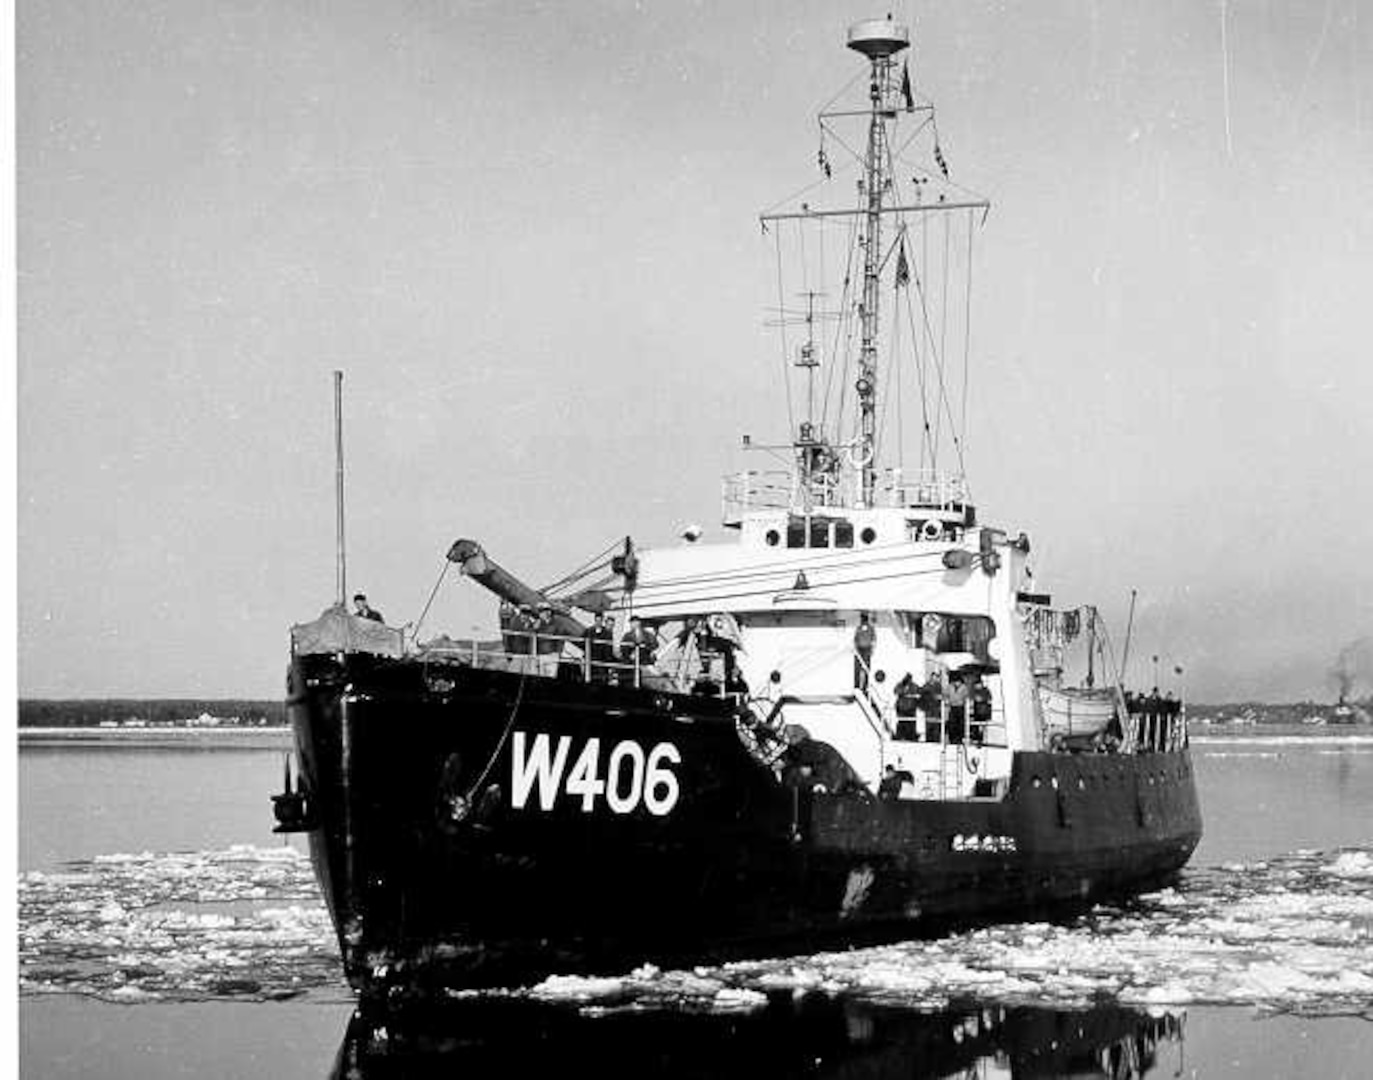 Acacia, 1944 (WLB 406) > United States Coast Guard > All